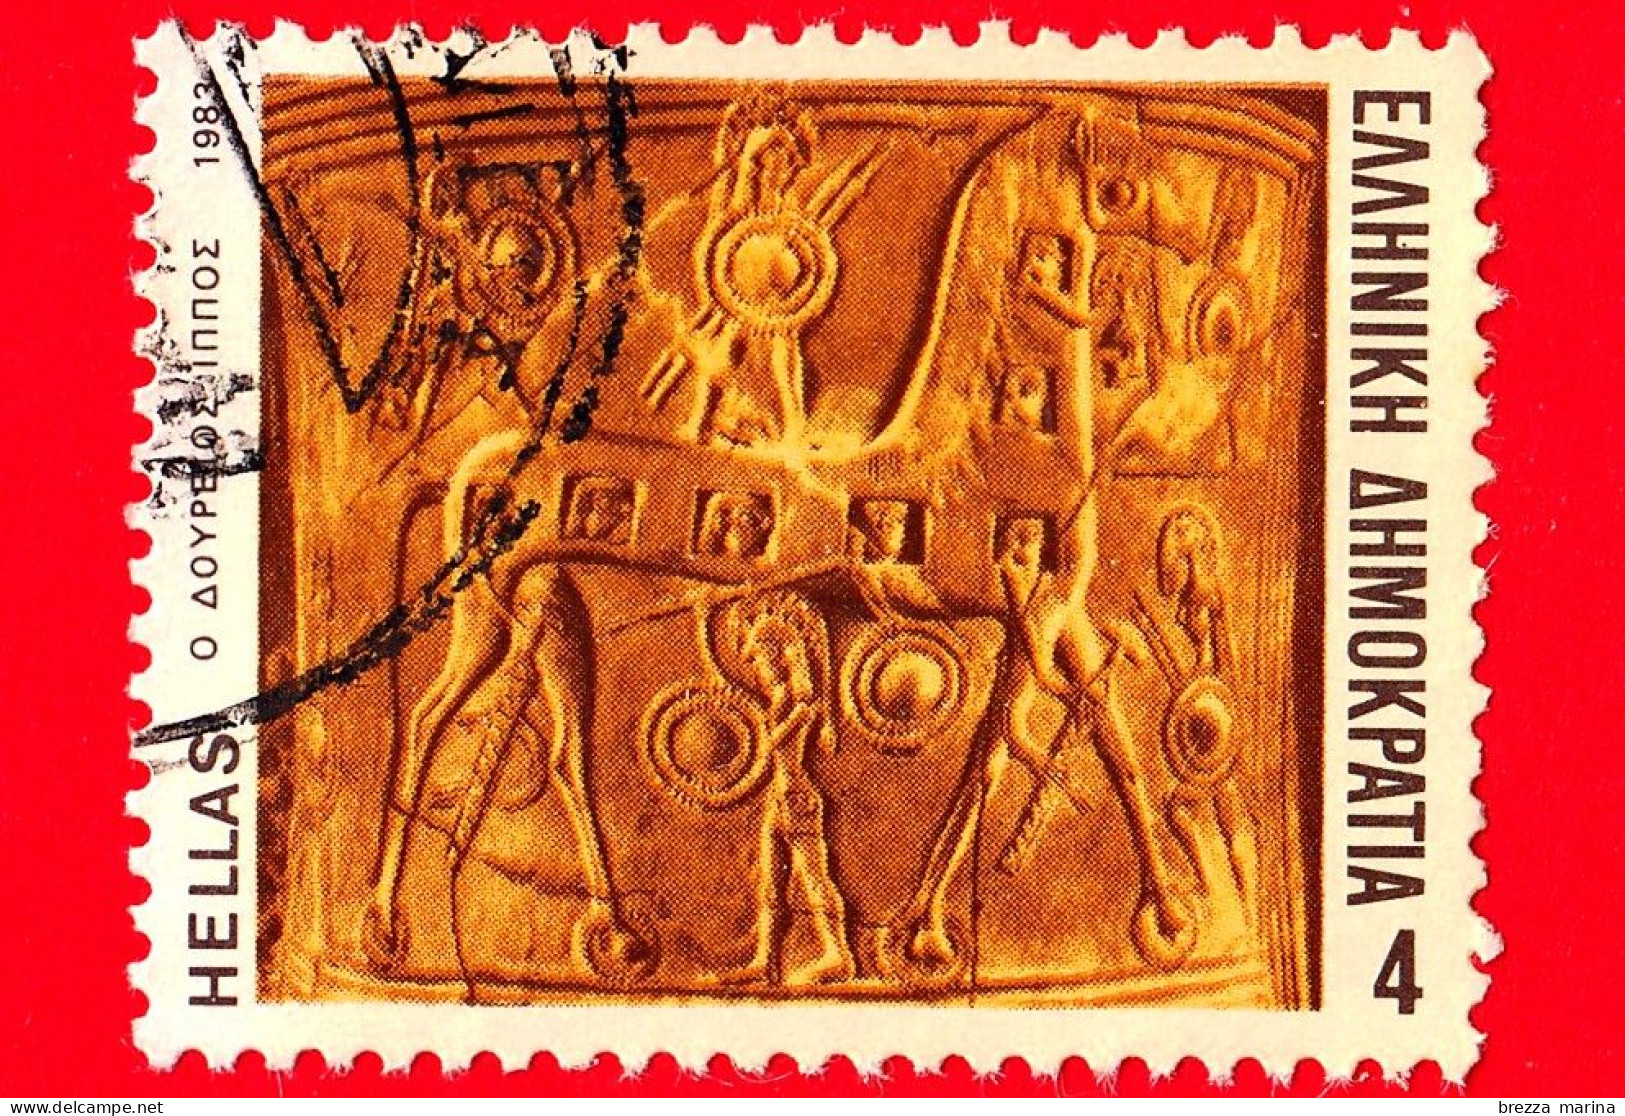 GRECIA - HELLAS - Usato - 1983 - Mitologia - Epopea Di Omero - Il Cavallo Di Legno - 4 - Used Stamps